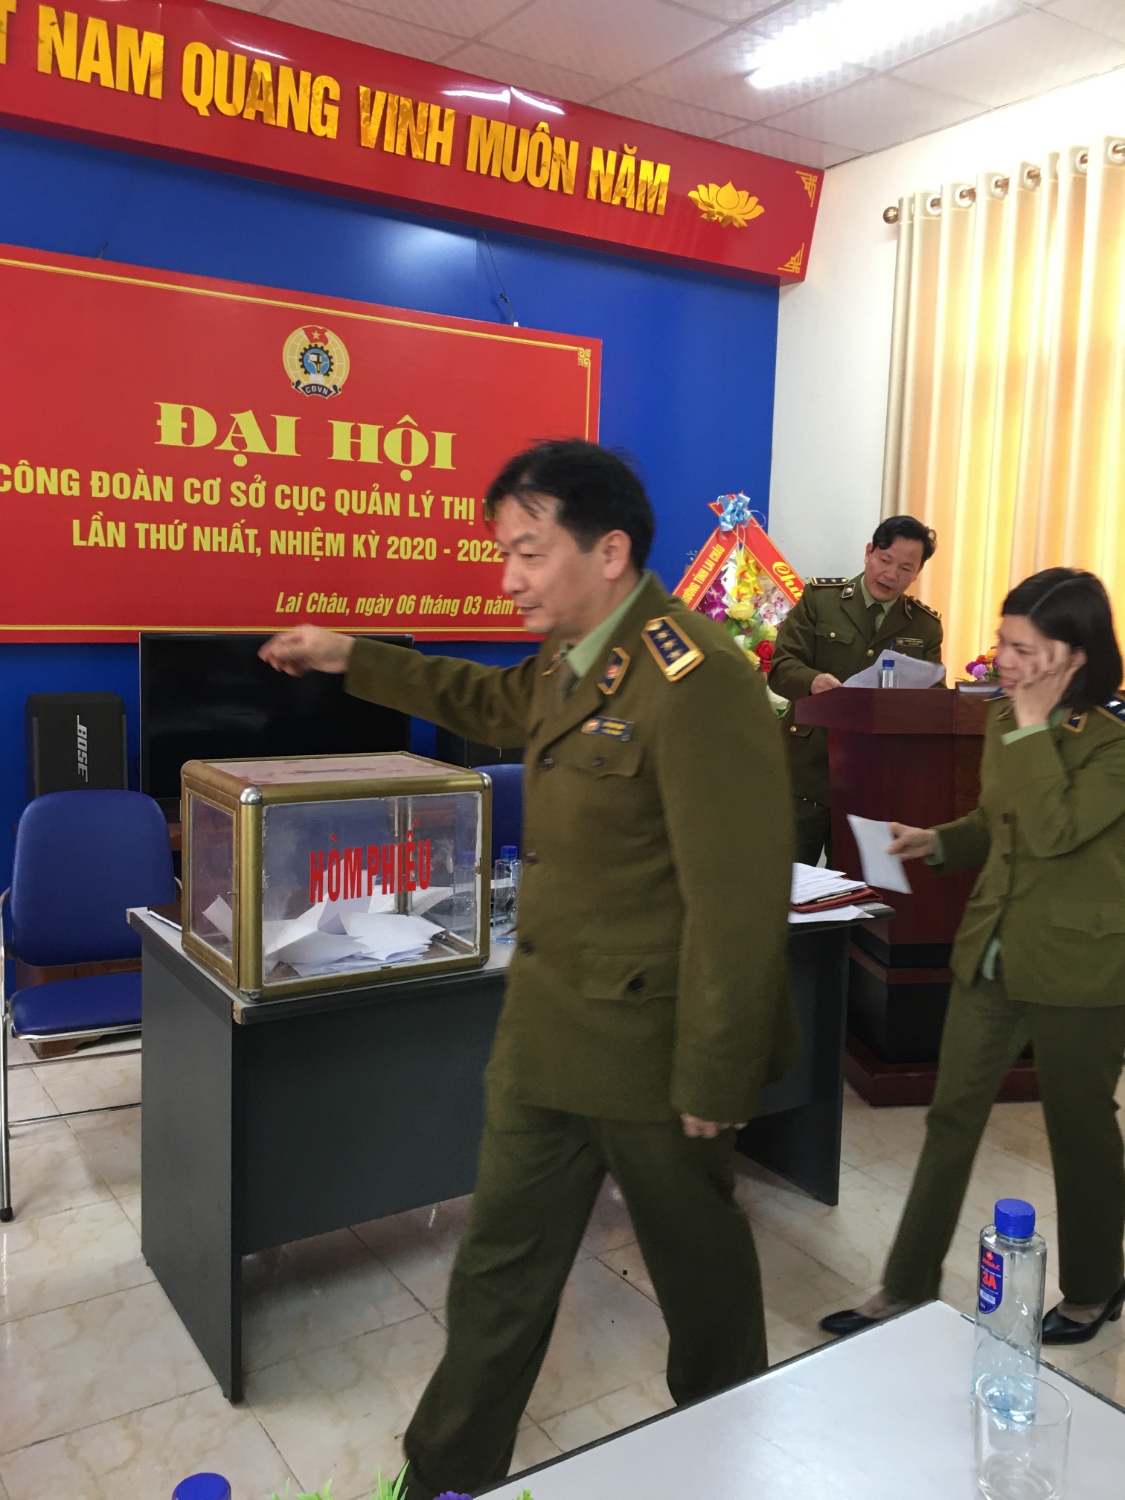 Đoàn viên CĐCS Cục Quản lý thị trường tỉnh Lai Châu bỏ phiếu bầu Ban Chấp hành CĐCS nhiệm kỳ 2020 - 2022